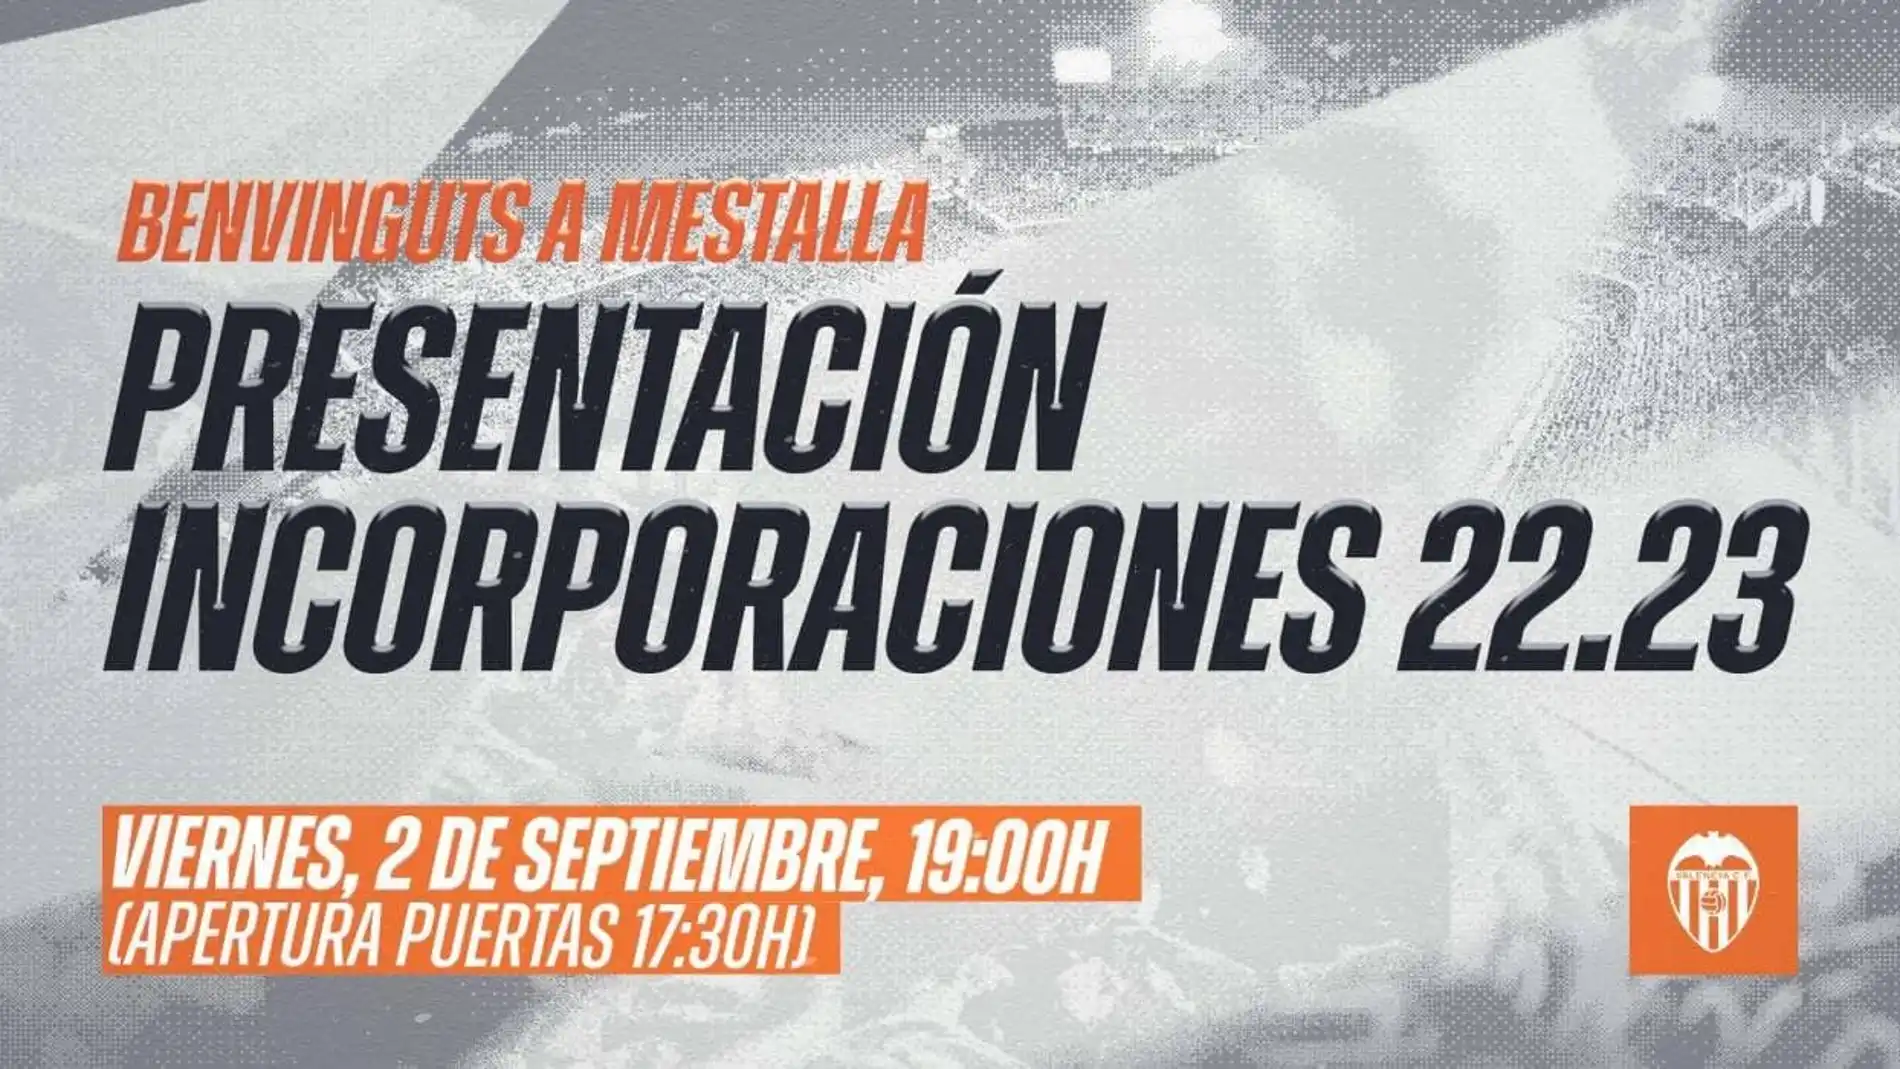 El Valencia presentará a los nuevos fichajes este viernes en Mestalla